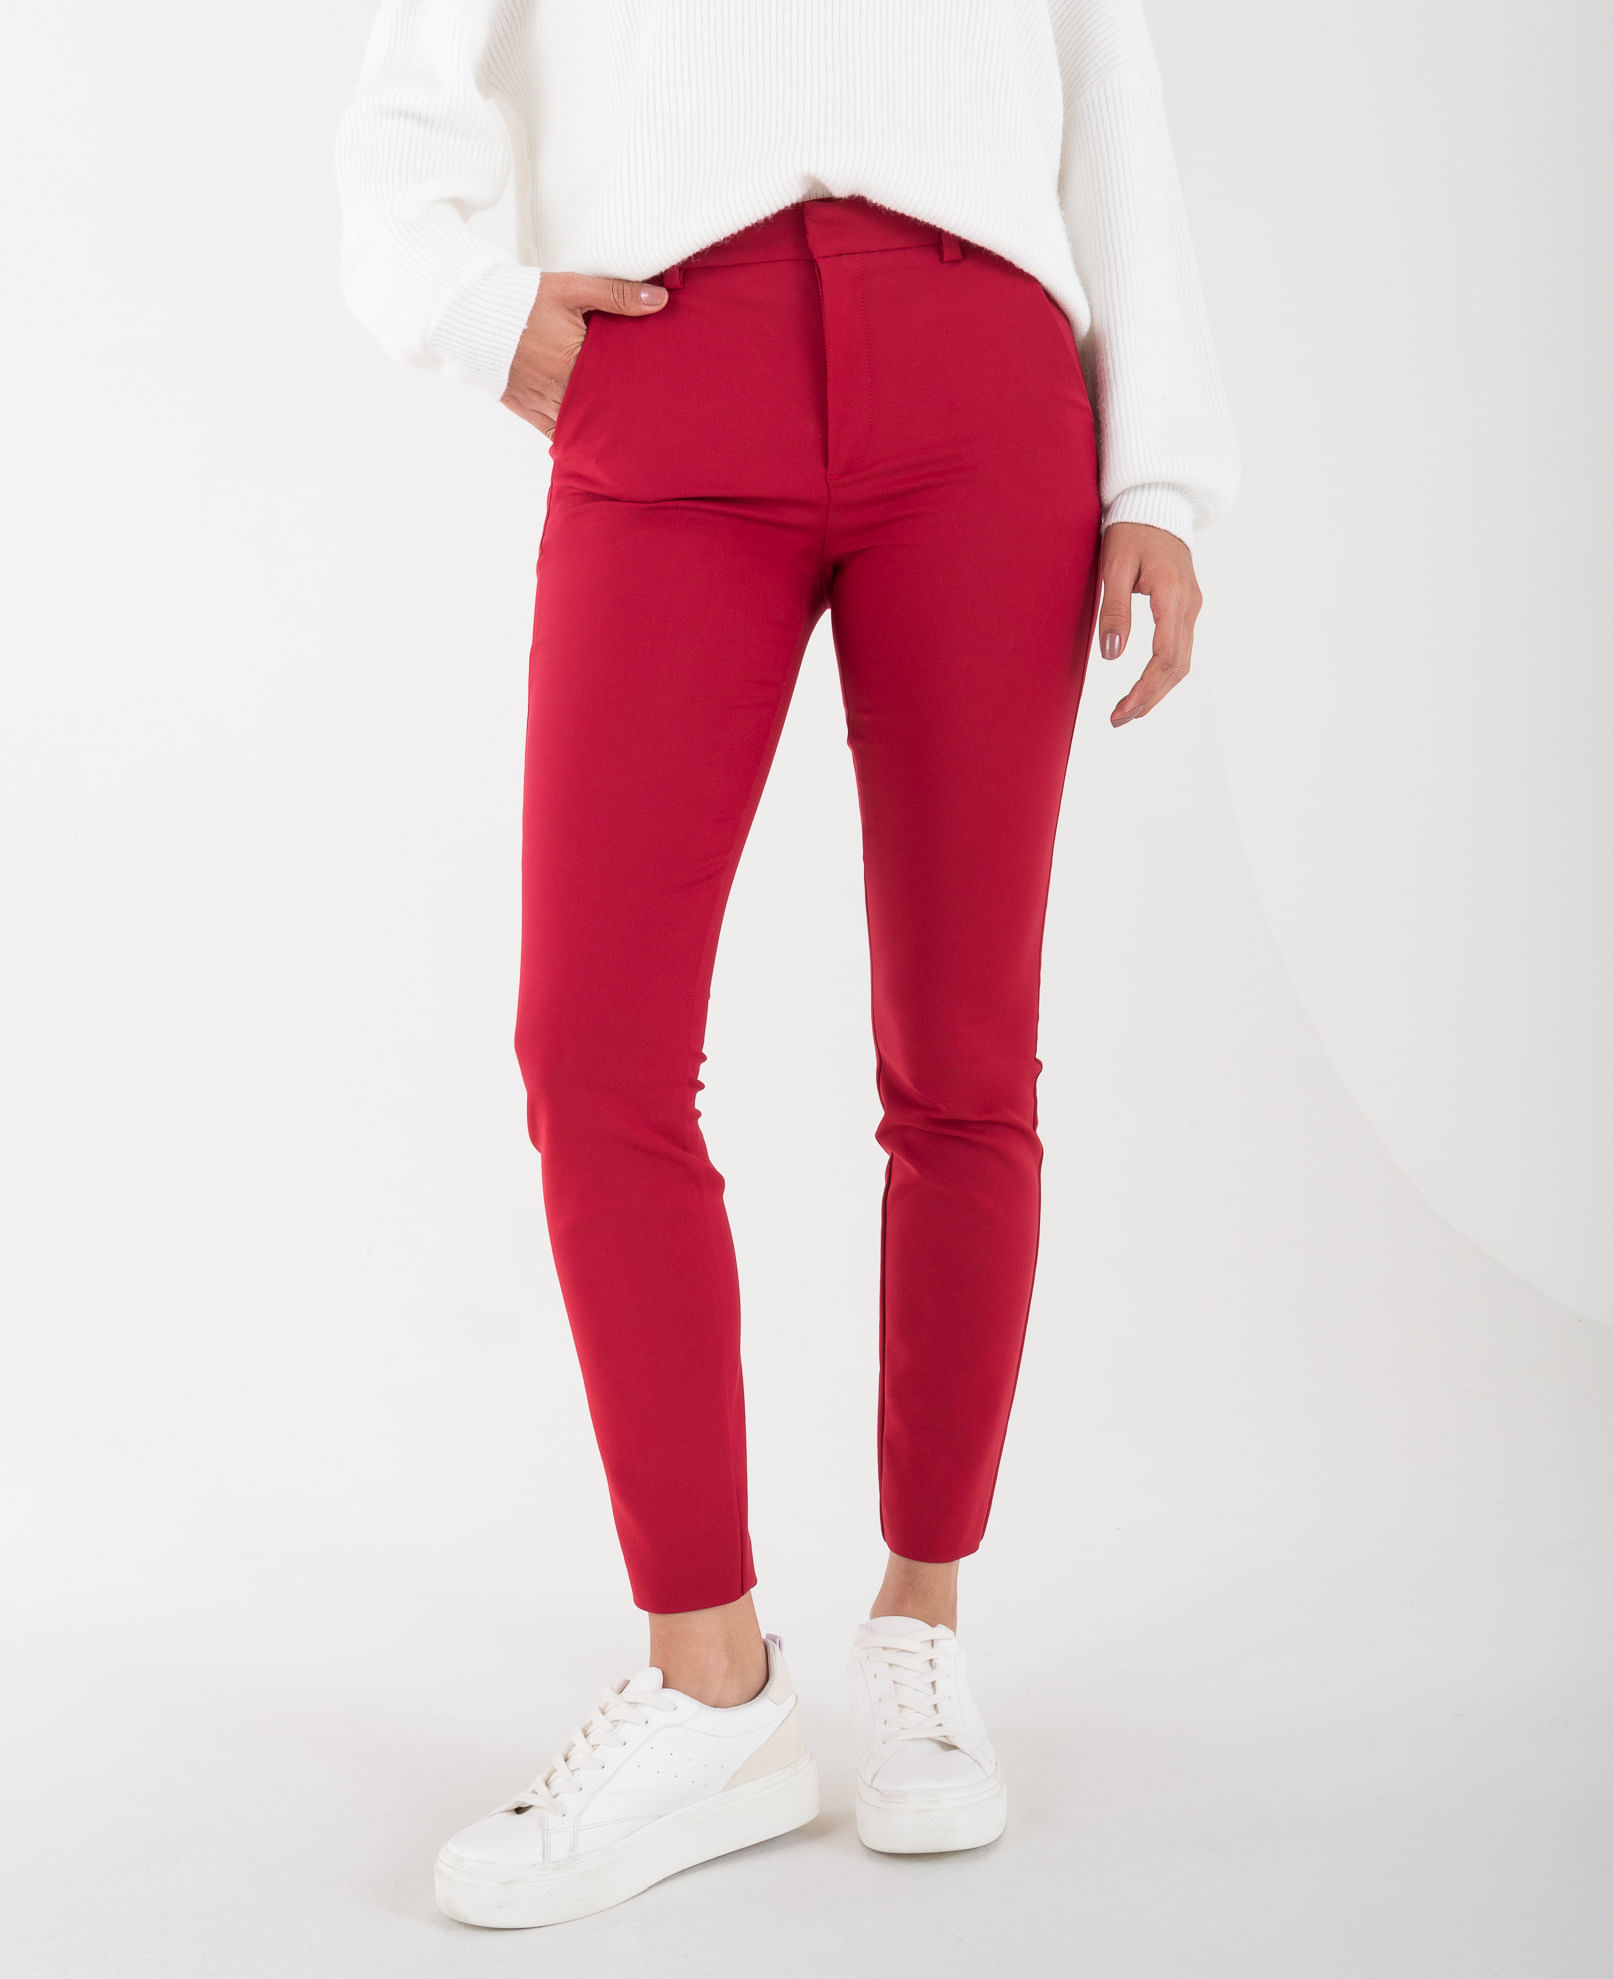 Pantalón rojo intenso slim fit con pinzas y dobladillo